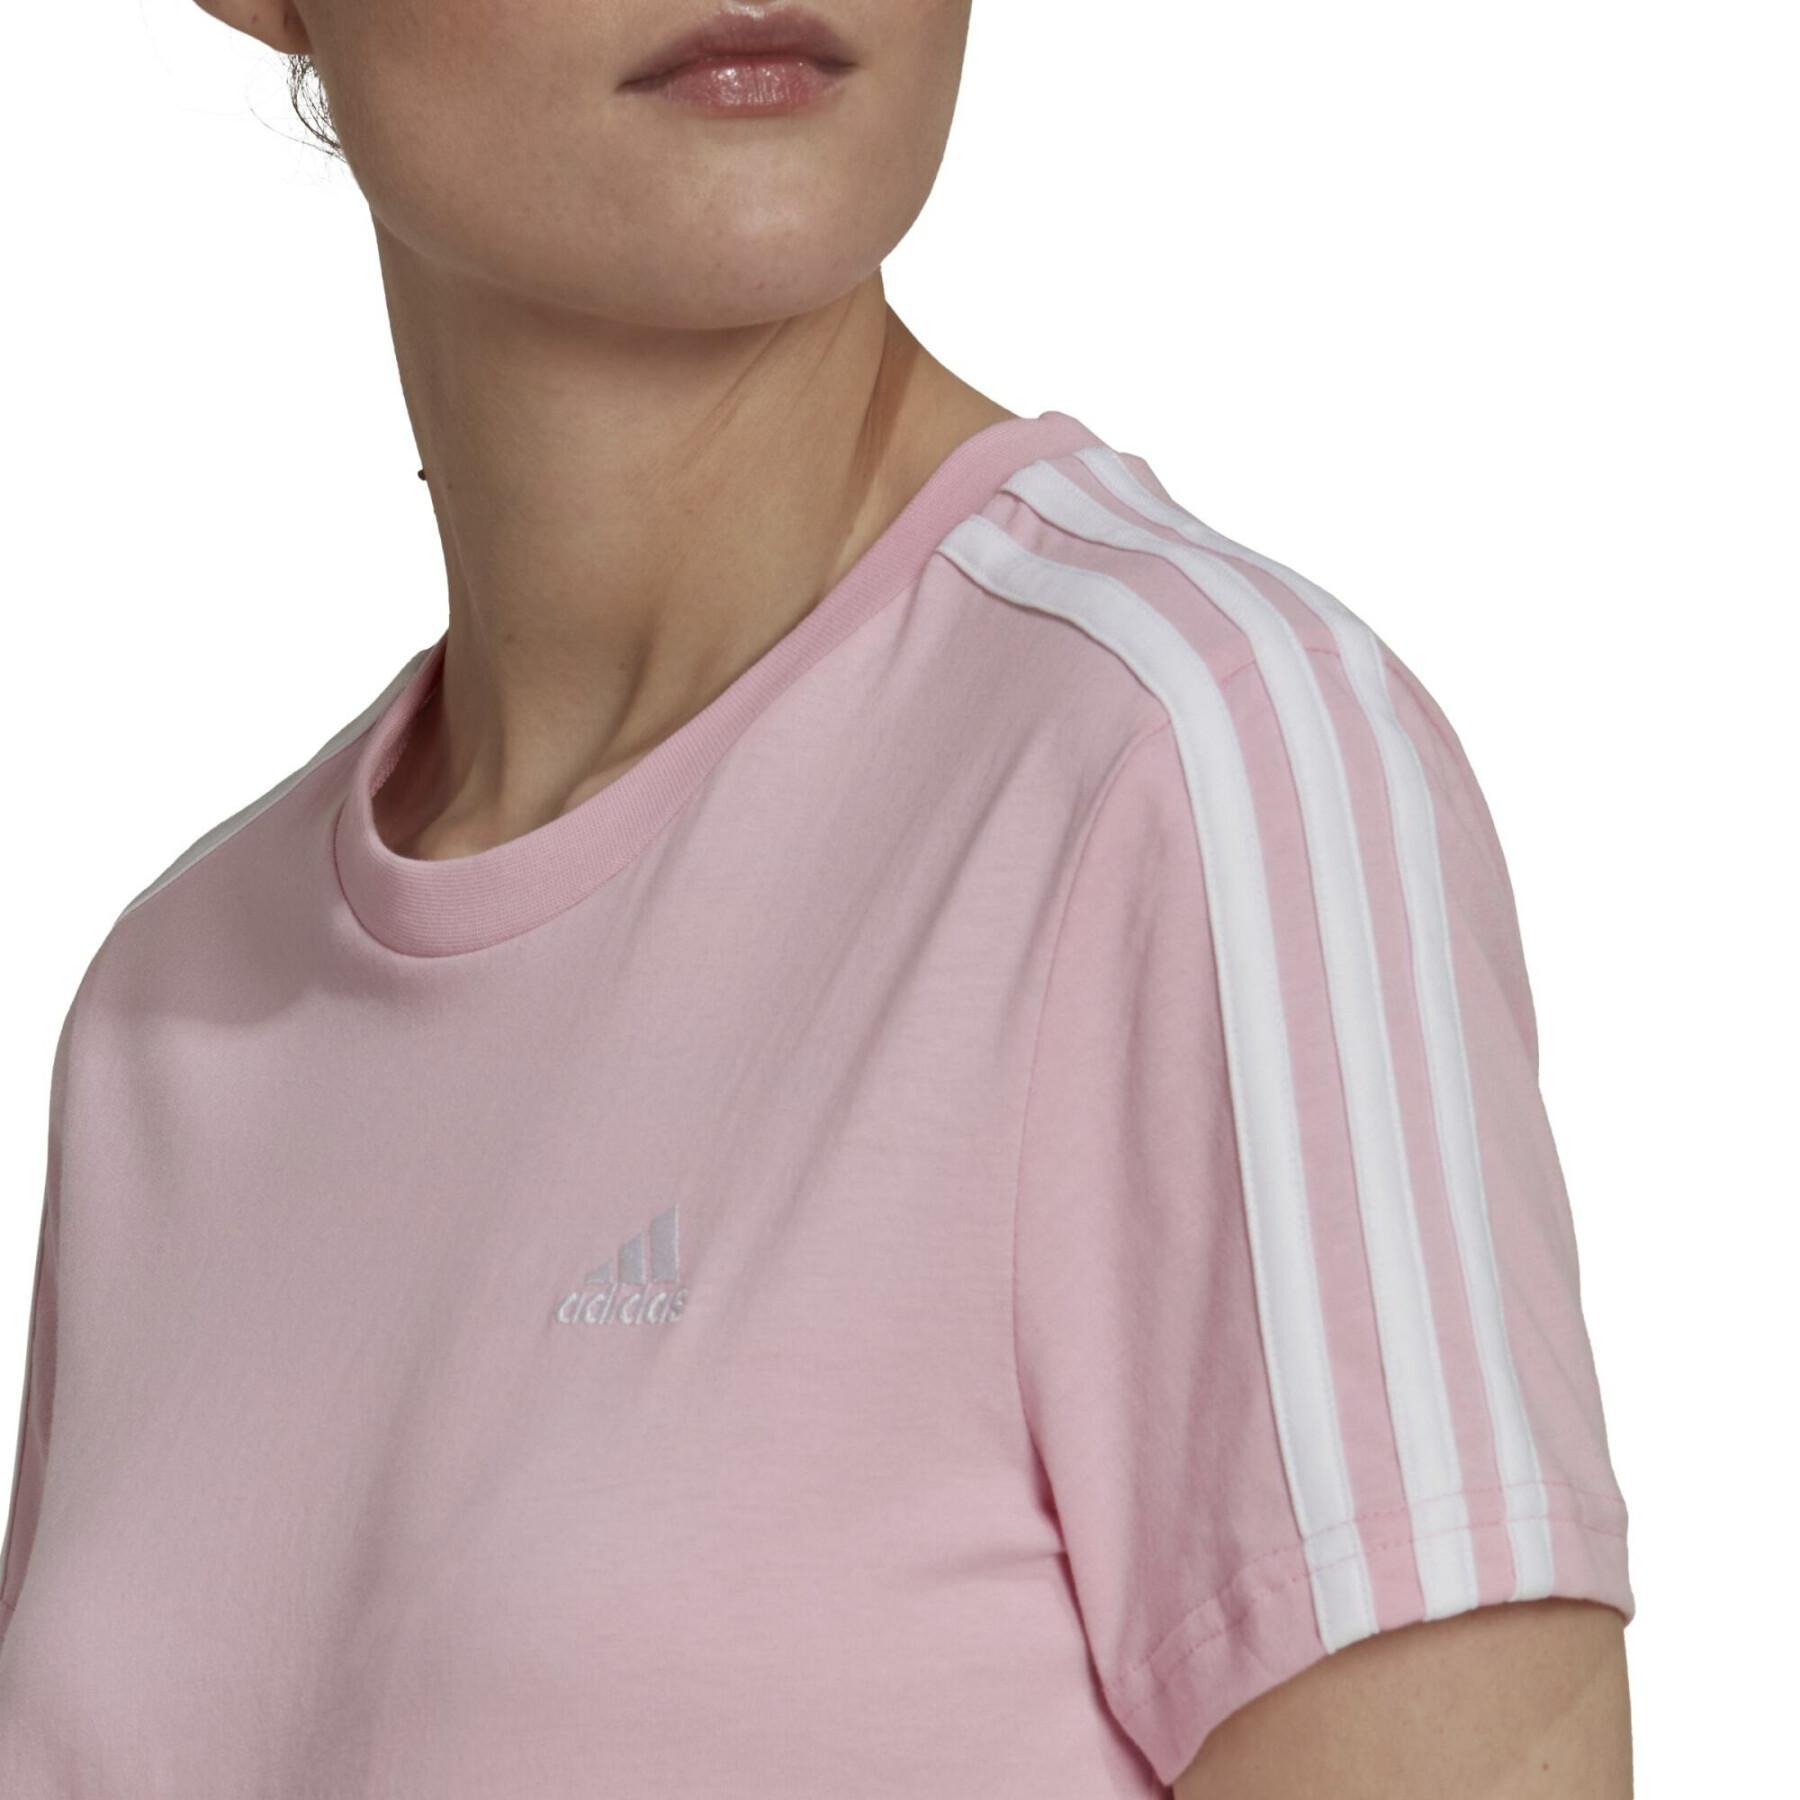 Eng anliegendes T-Shirt mit 3 Streifen, Damen adidas Essentials